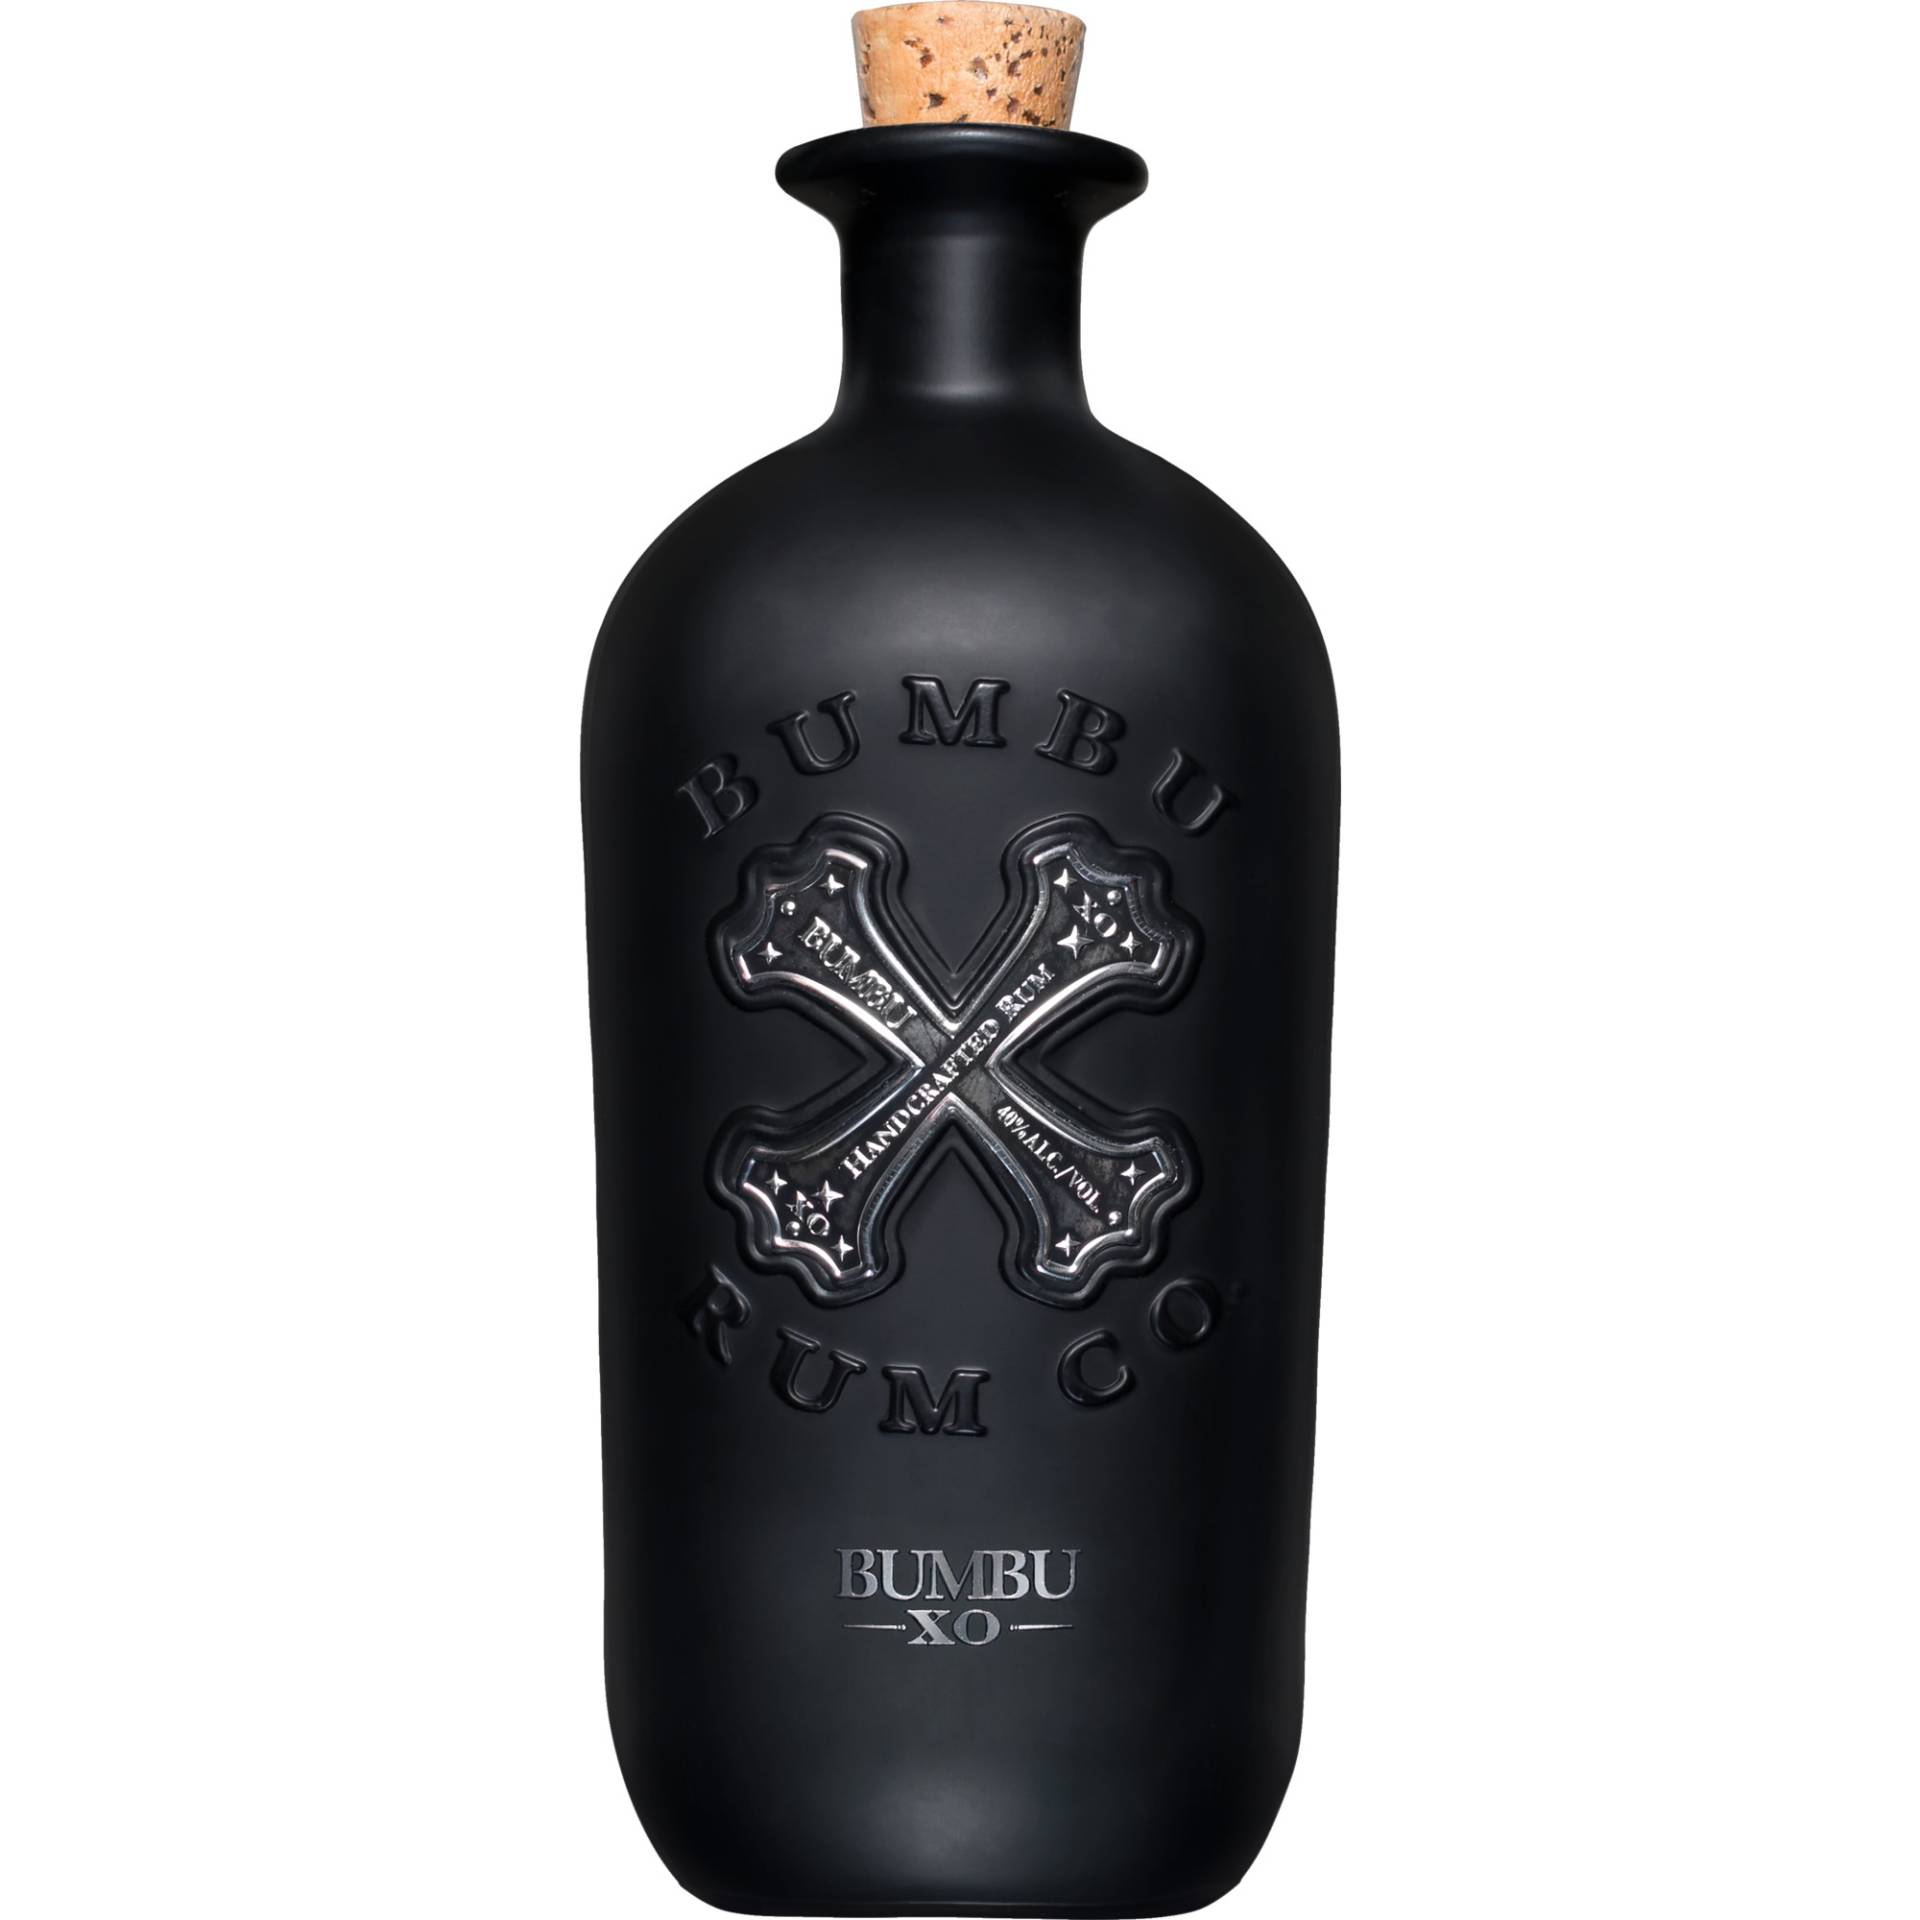 Bumbu Rum XO, Barbados, 0,7 L, 40% Vol., Spirituosen von Pernod Ricard Deutschland GmbH, Habsburgerring 2, 50674 Köln, Deutschland